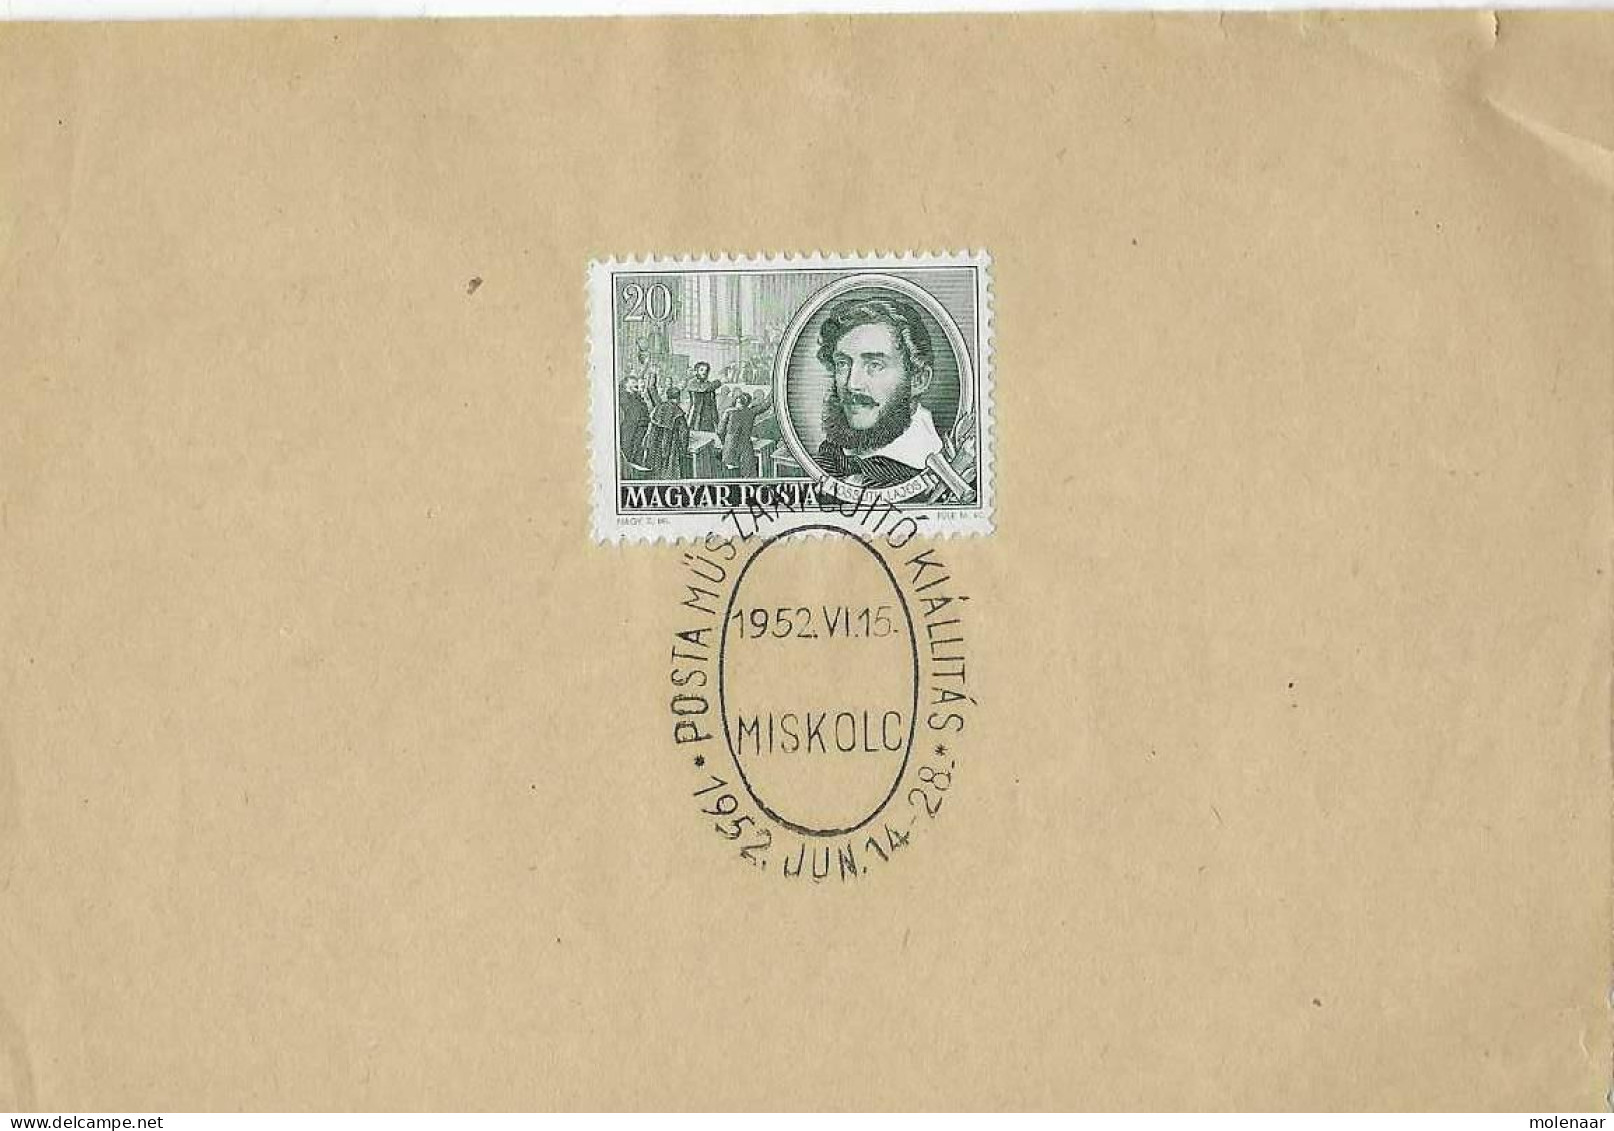 Postzegels > Europa > Hongarije > 1945-60 >  Kaart Met 1 Postzegel En Speciaal Stempel (17053) - Covers & Documents